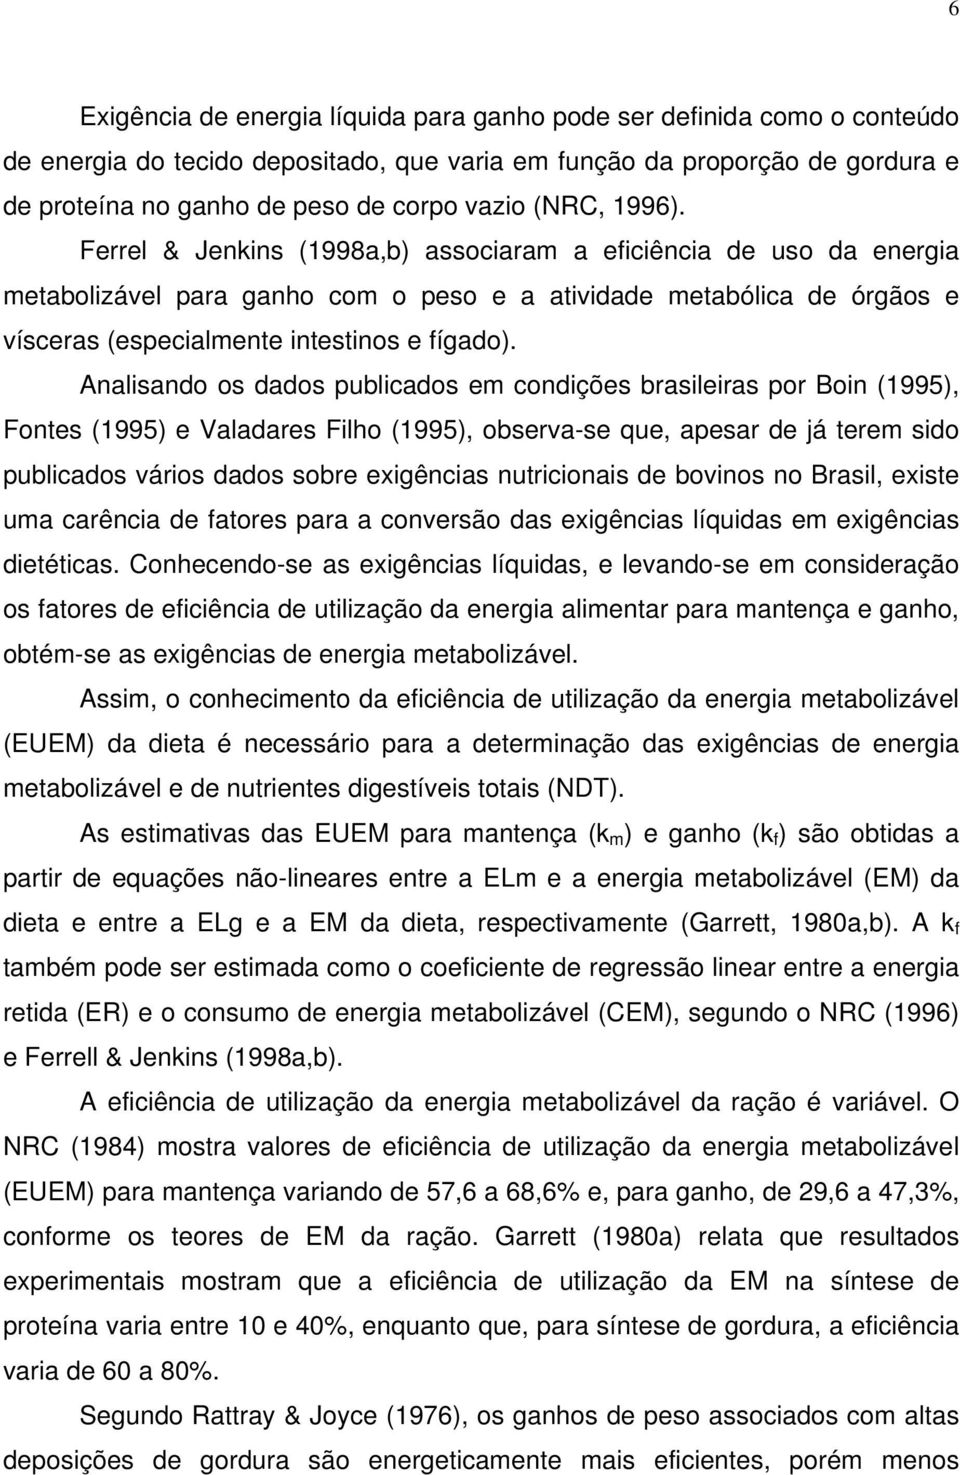 Analisando os dados publicados em condições brasileiras por Boin (1995), Fontes (1995) e Valadares Filho (1995), observa-se que, apesar de já terem sido publicados vários dados sobre exigências